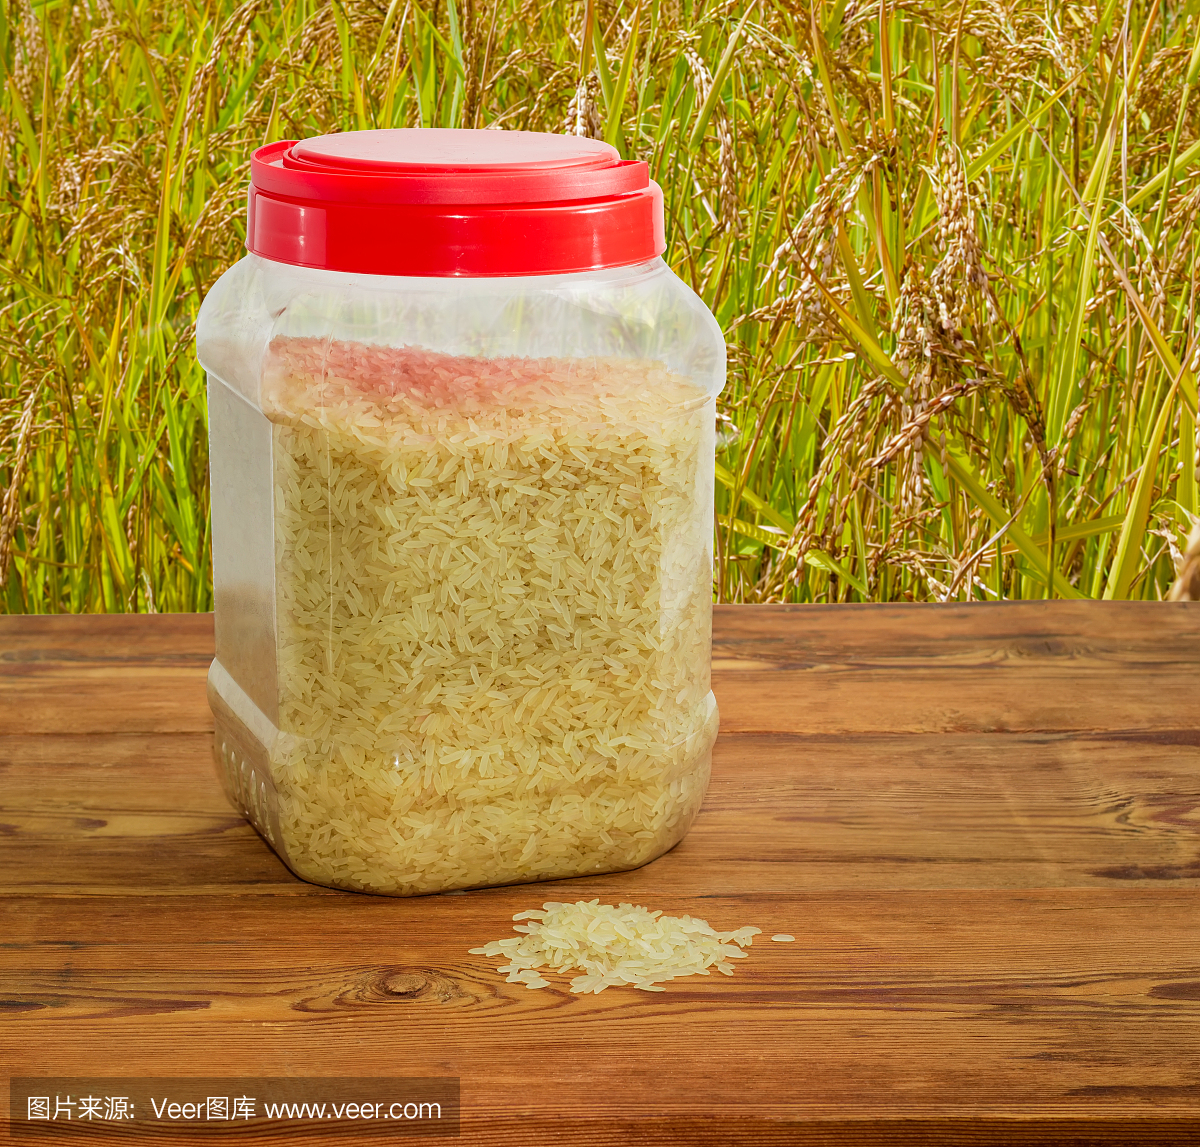 未煮熟的大米在稻田背景的塑料容器